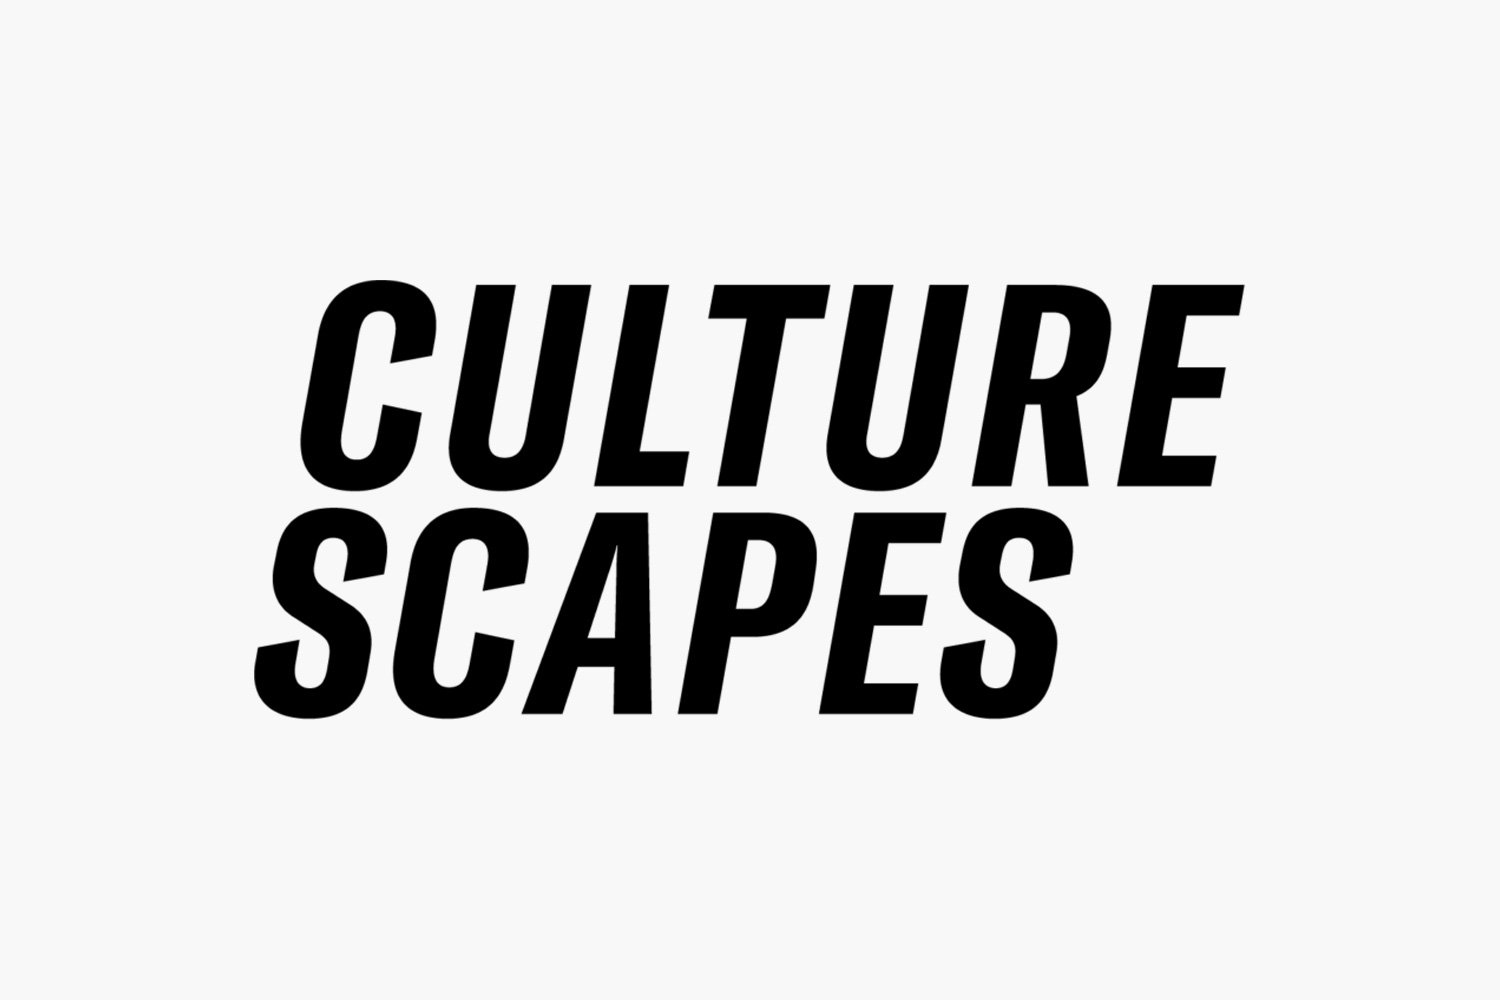 Culturescapes.jpg